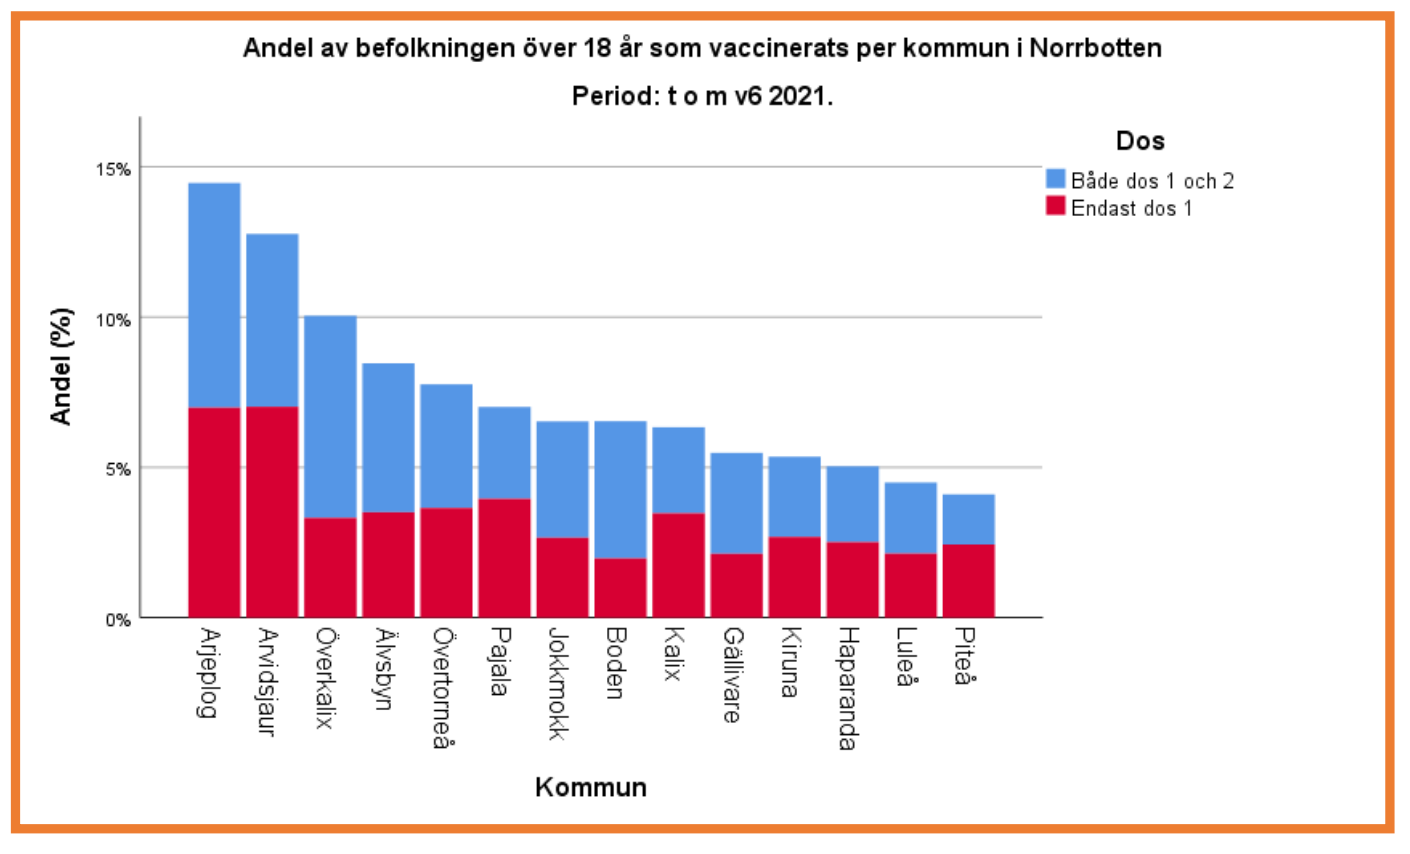 Andel av befolkning över 18 år som vaccinerats per kommun i Norrbotten. Till och med vecka 6, 2021. I Arjeplog har ca 14% fått två doser, och ca 7% har fått en dos.